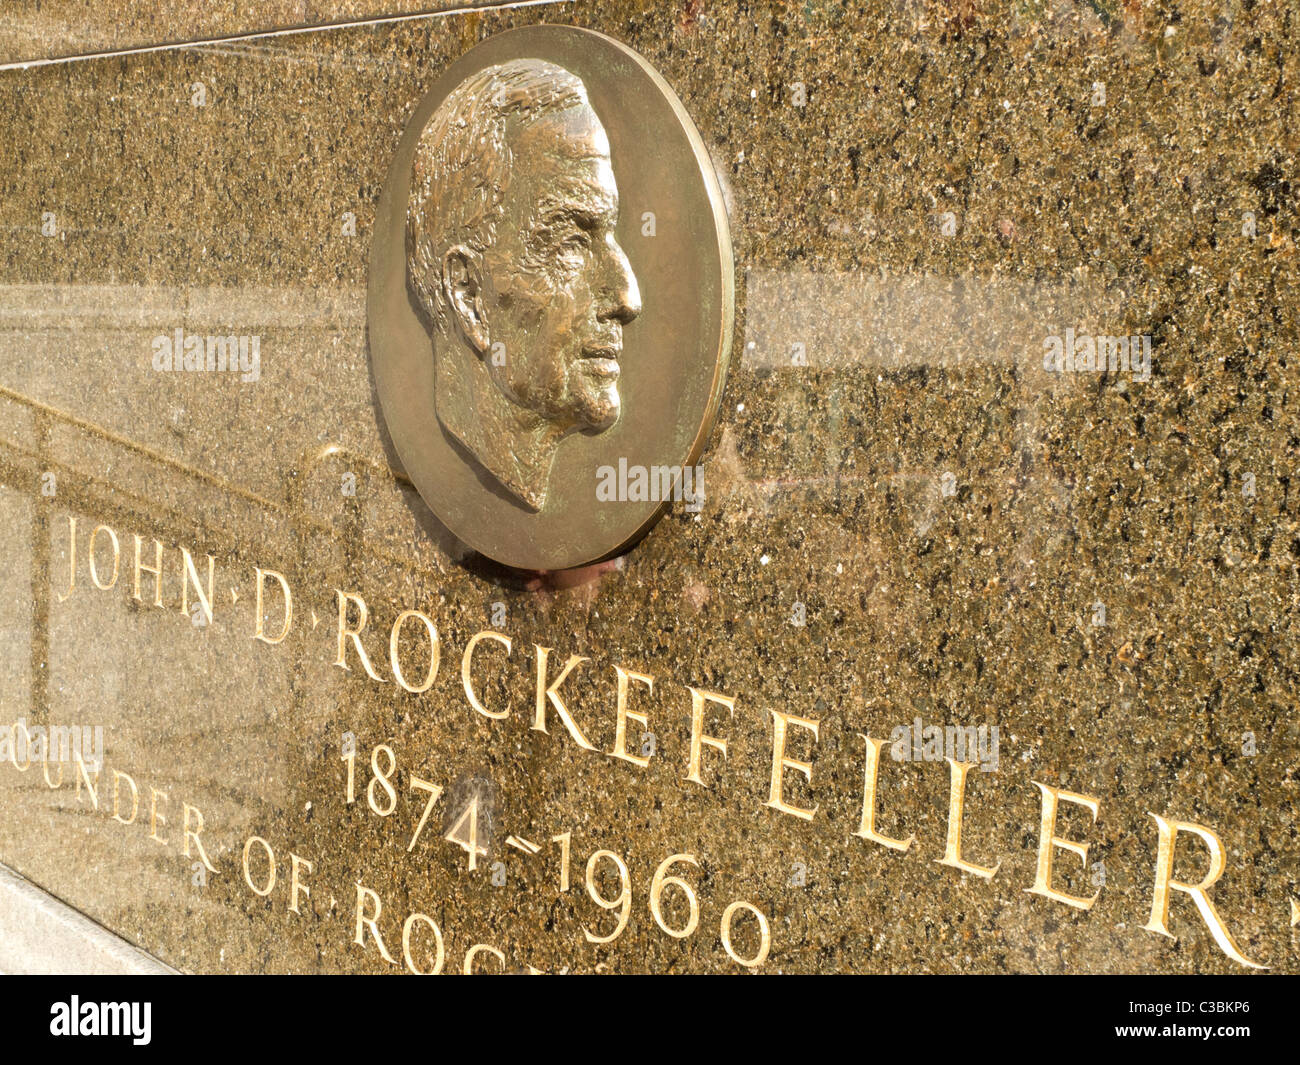 10+ John D Rockefeller Jr fotos de stock, imagens e fotos royalty-free -  iStock